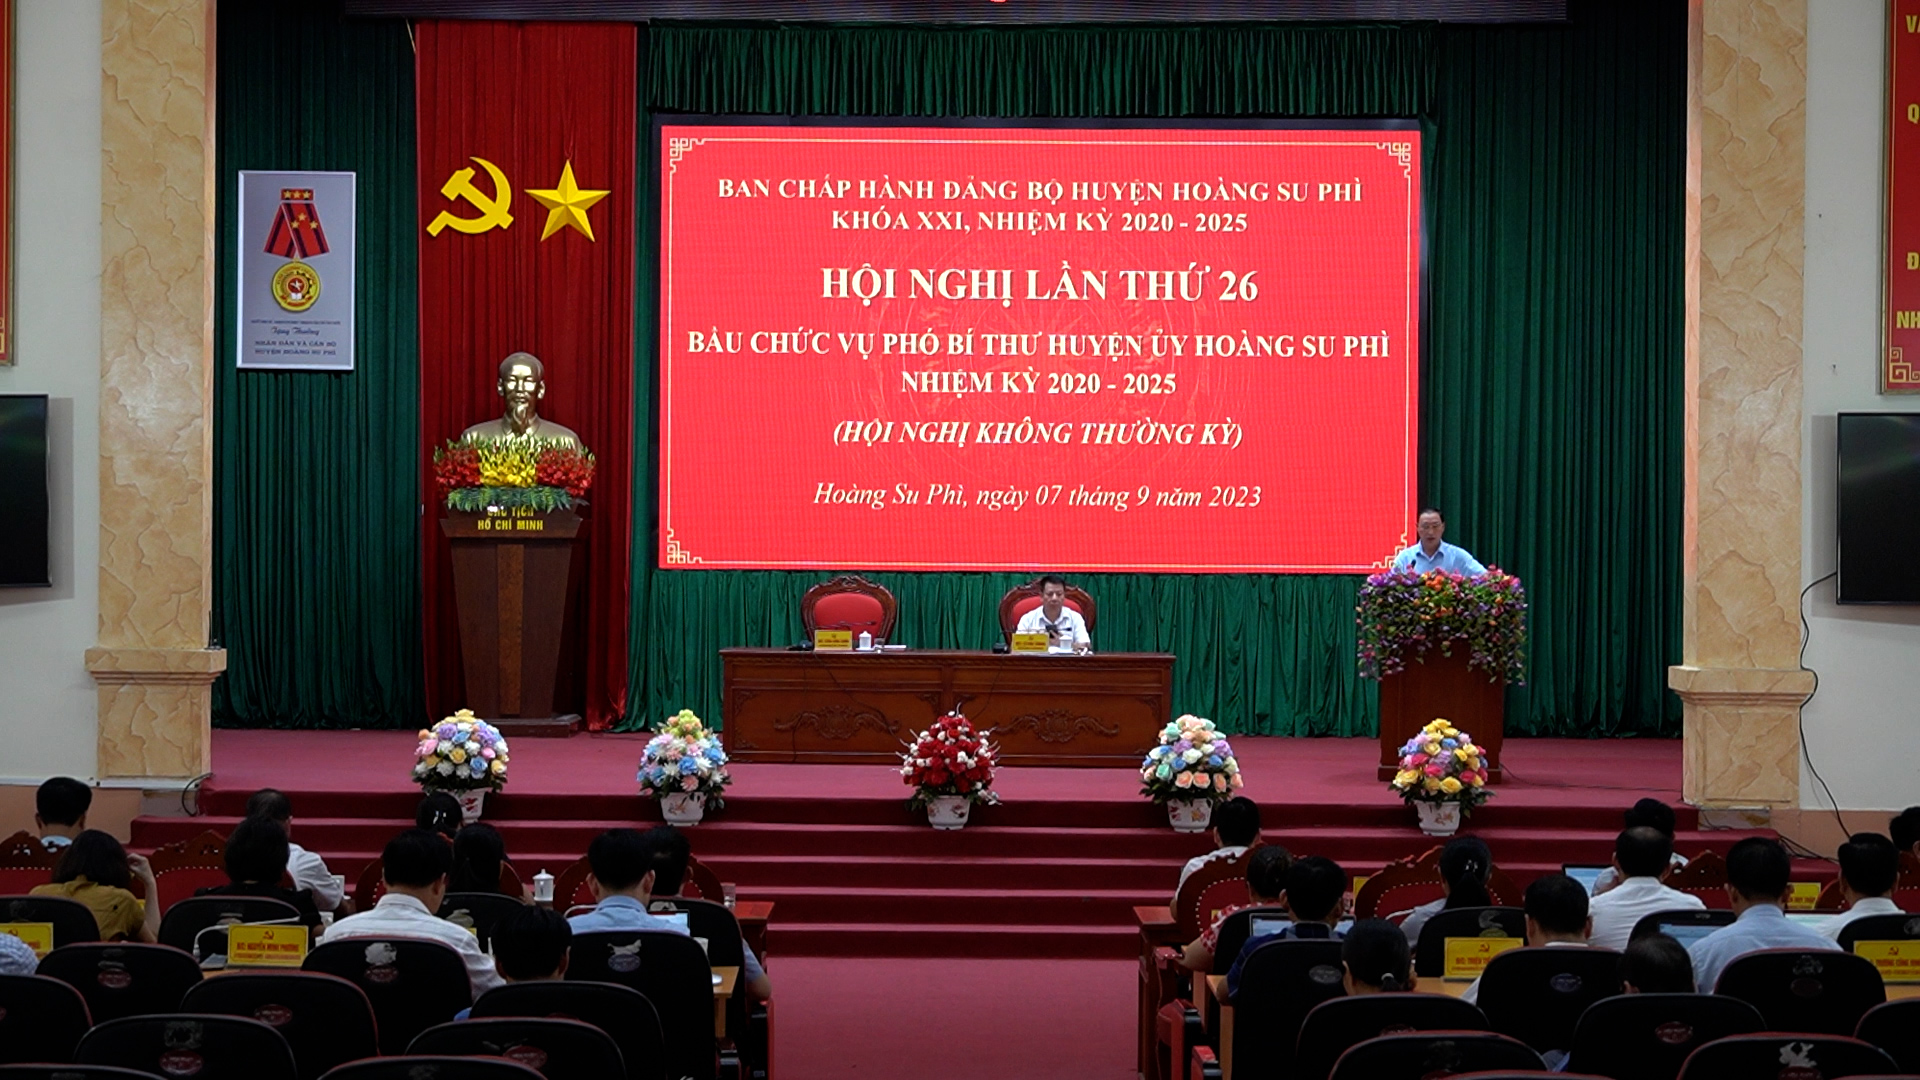 Hội nghị BCH Huyện ủy, lần thứ 26 bầu chức vụ Phó Bí thư Huyện ủy Hoàng Su Phì